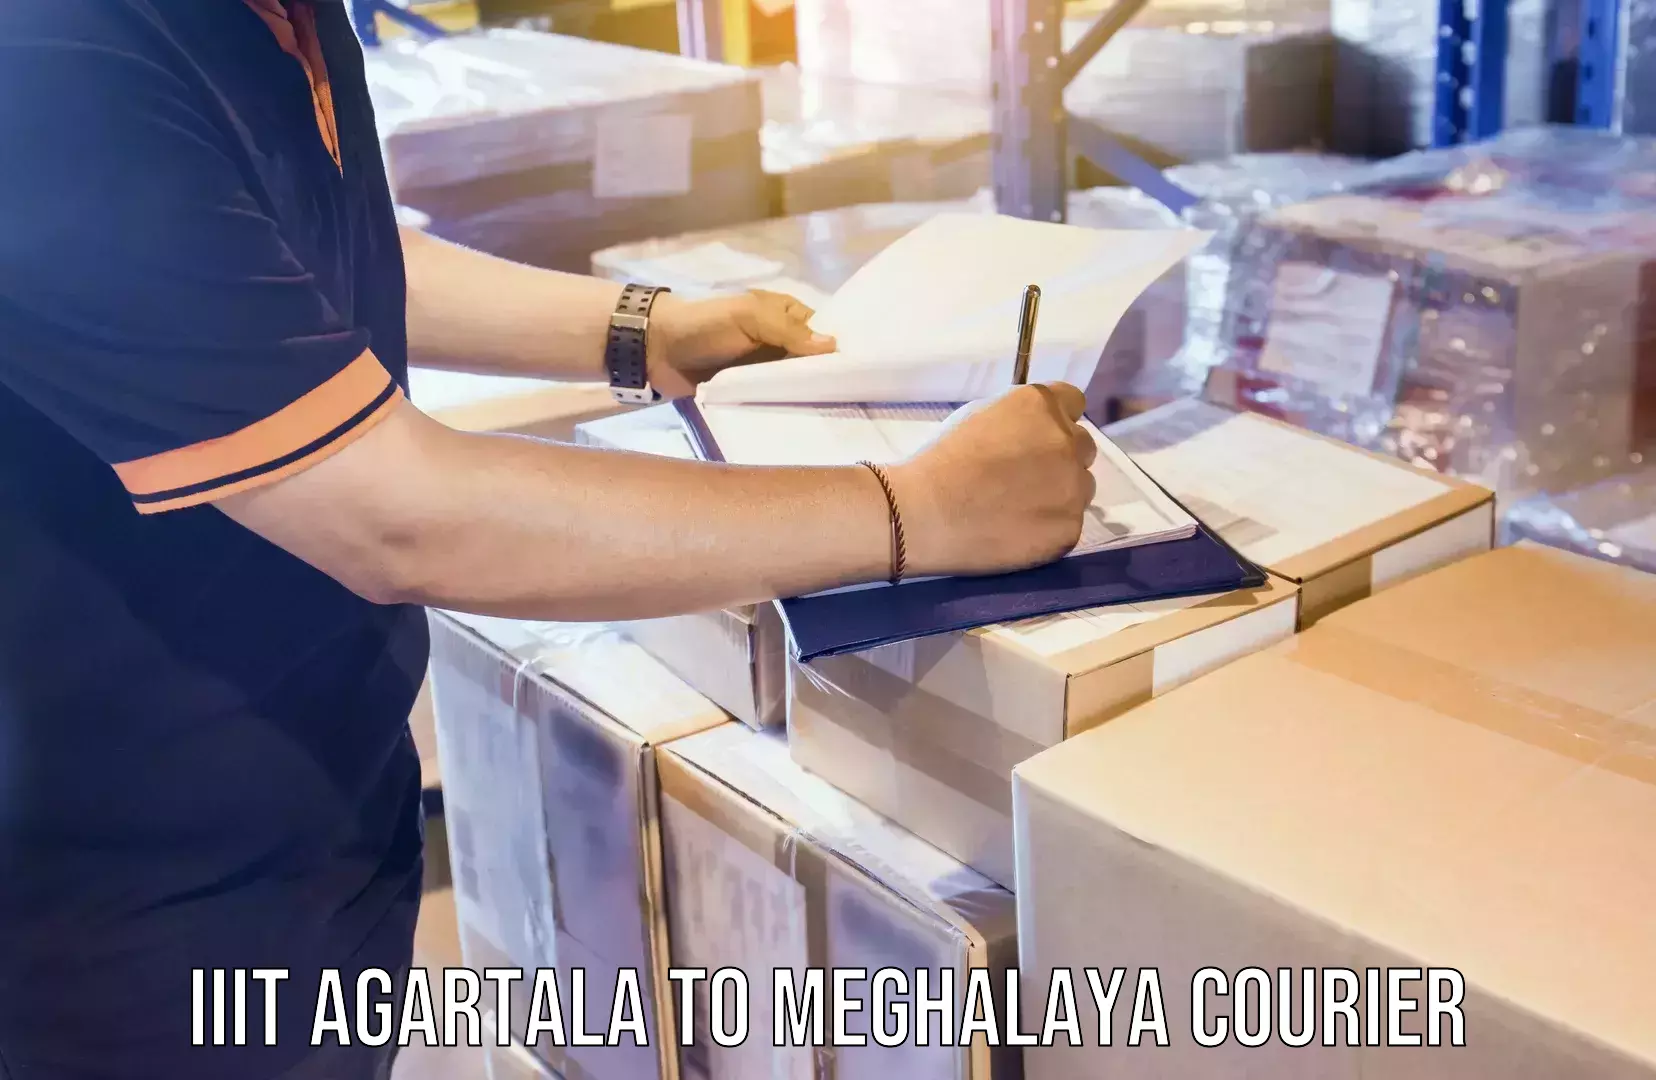 Expedited shipping solutions in IIIT Agartala to Meghalaya